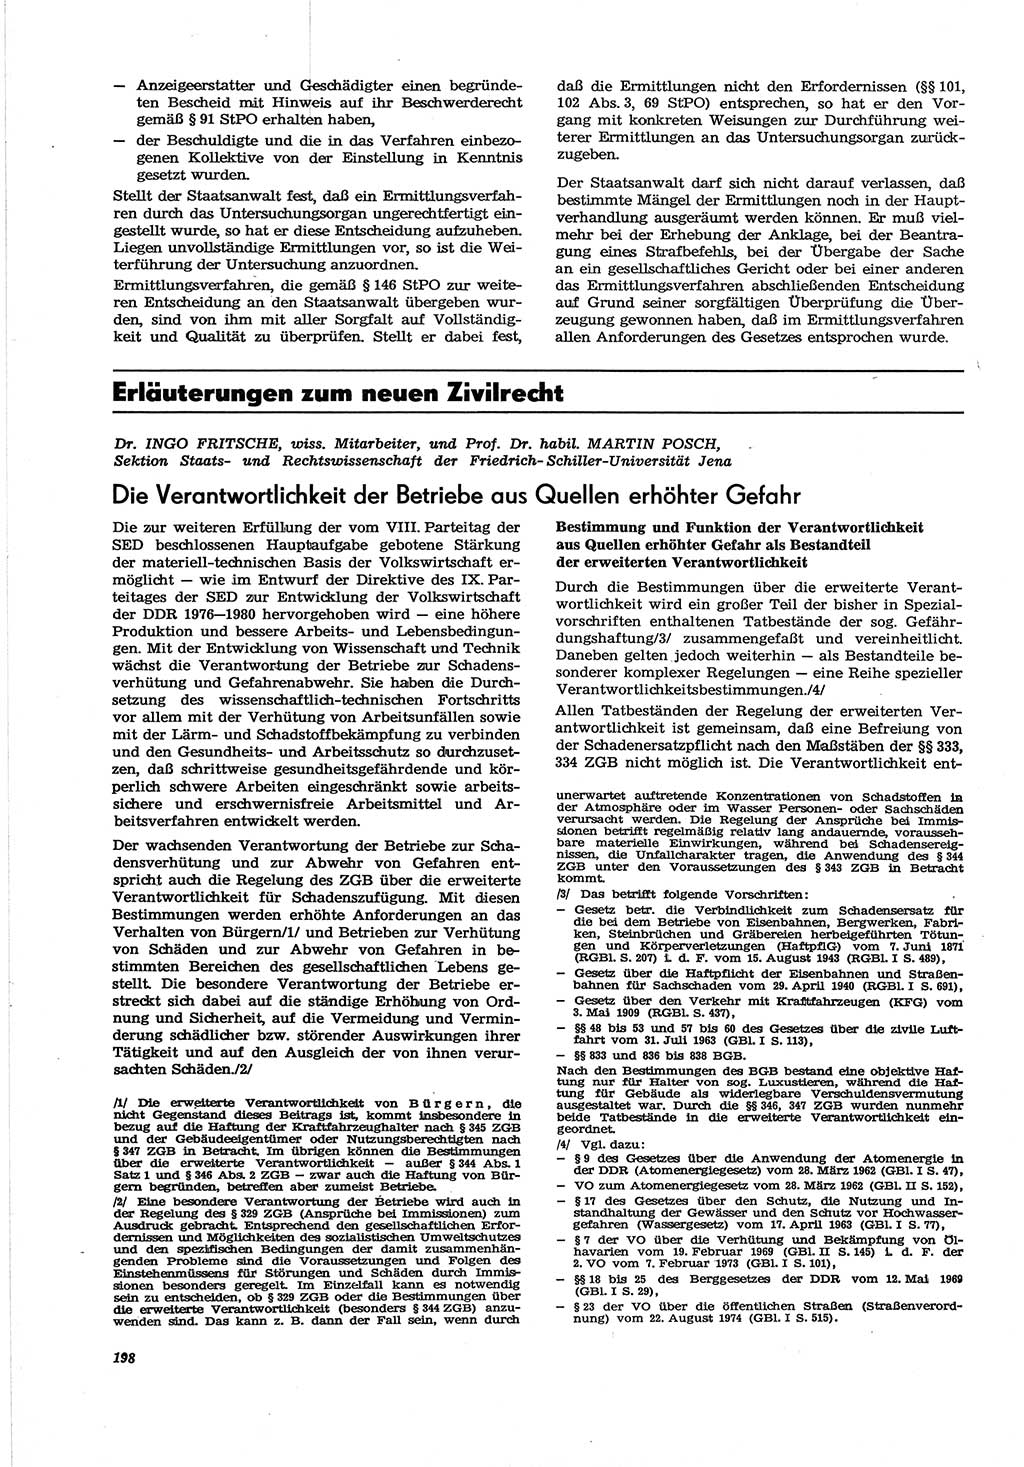 Neue Justiz (NJ), Zeitschrift für Recht und Rechtswissenschaft [Deutsche Demokratische Republik (DDR)], 30. Jahrgang 1976, Seite 198 (NJ DDR 1976, S. 198)